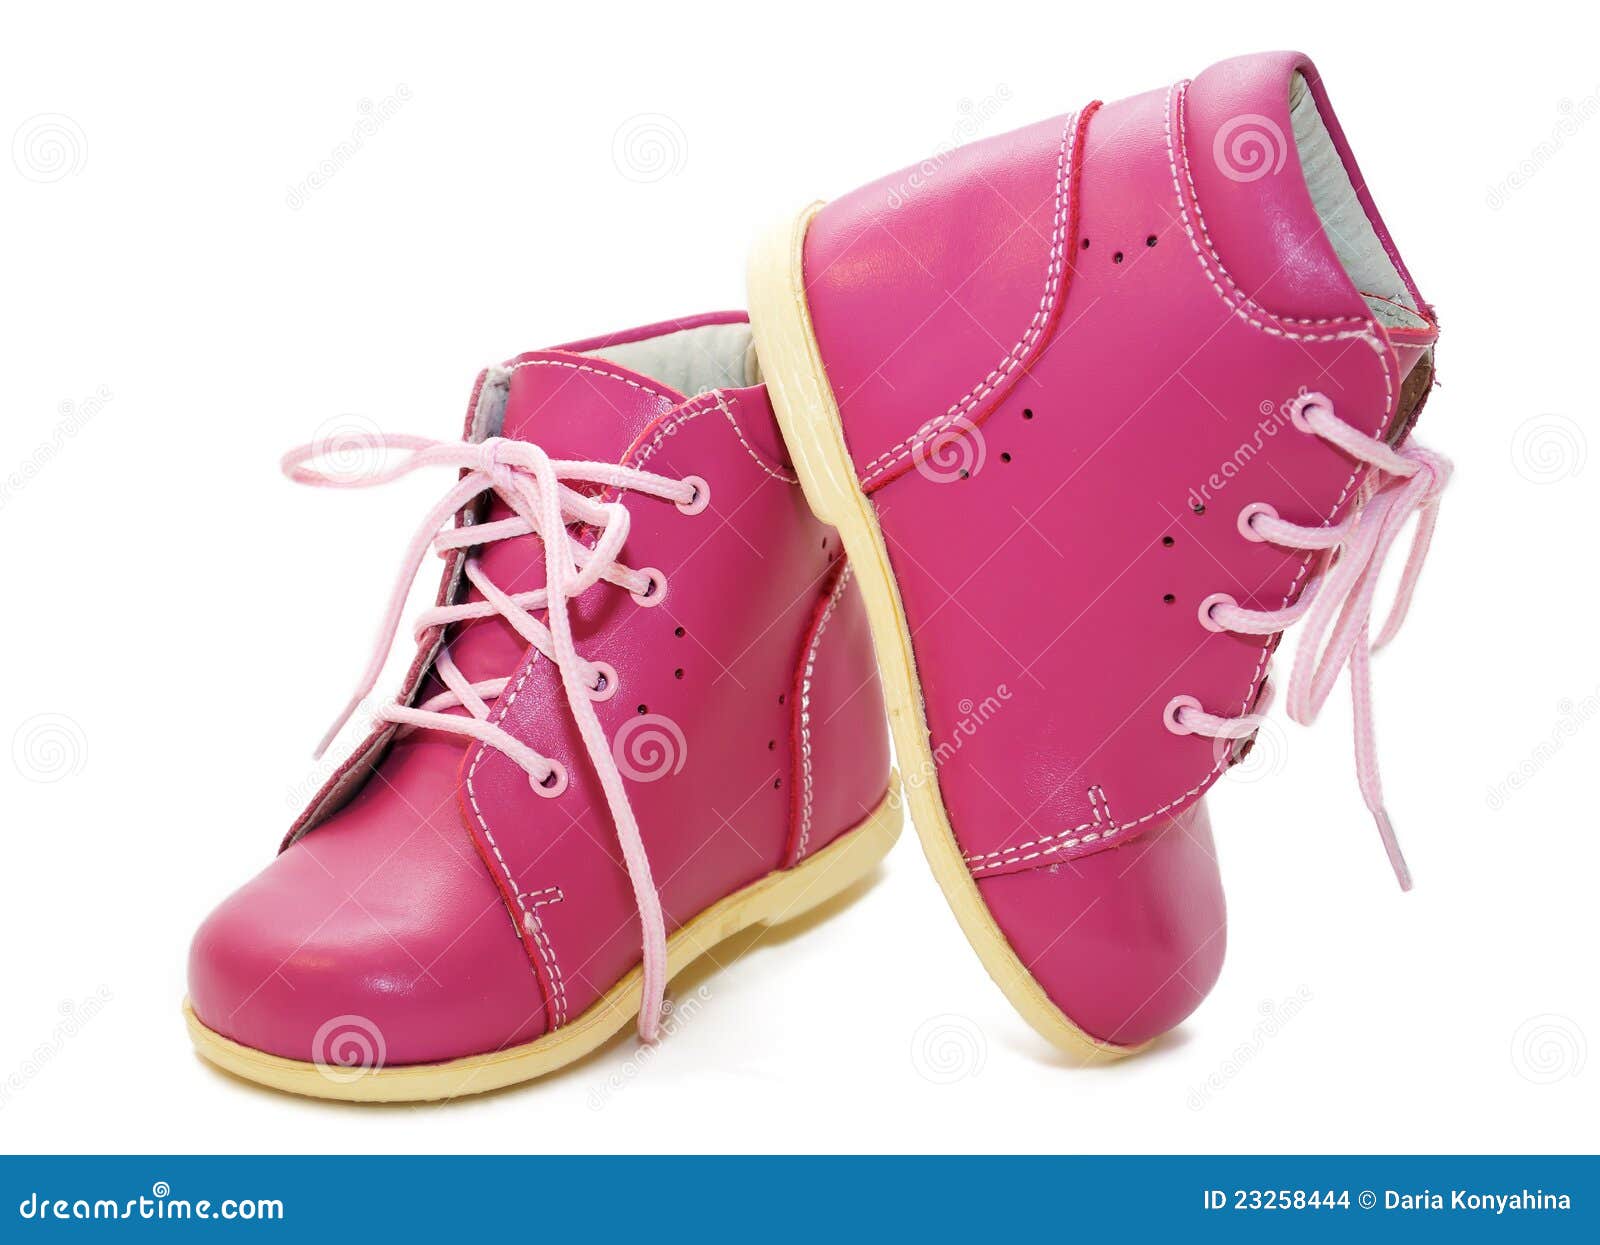 手绘一双粉色帆布鞋子图片素材免费下载 - 觅知网